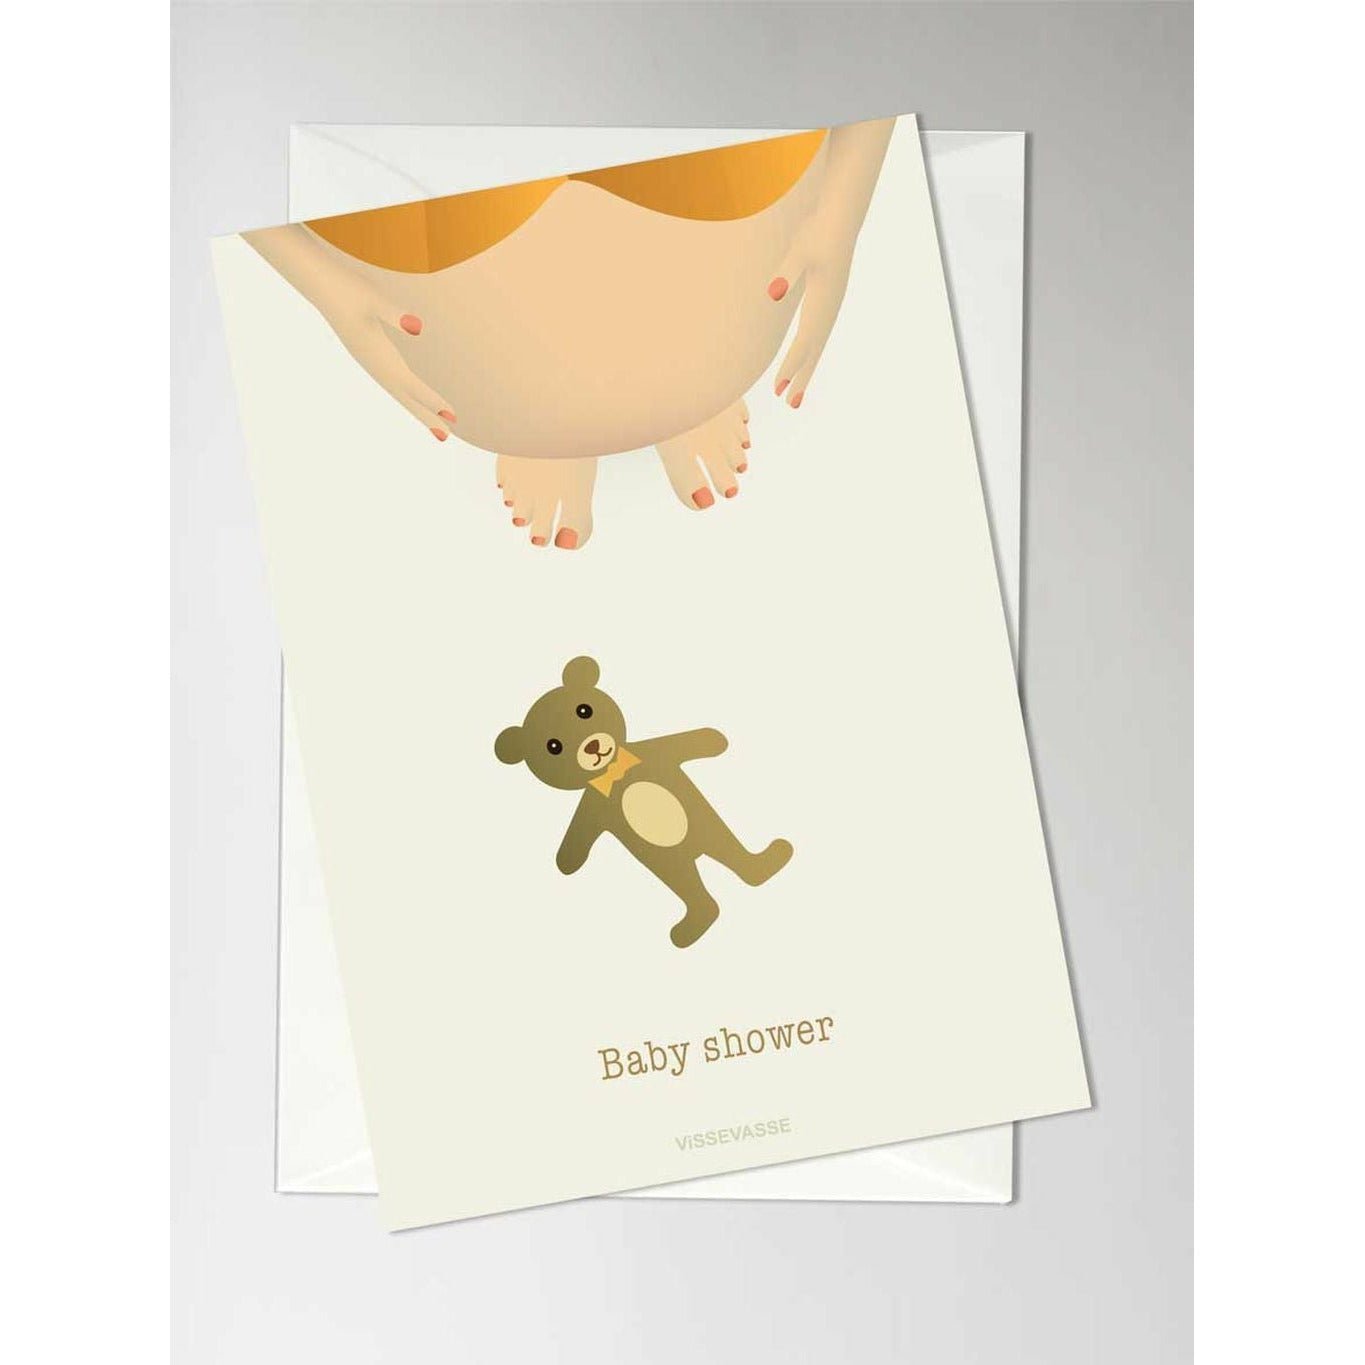 Vissevasse baby shower gratulasjonskort